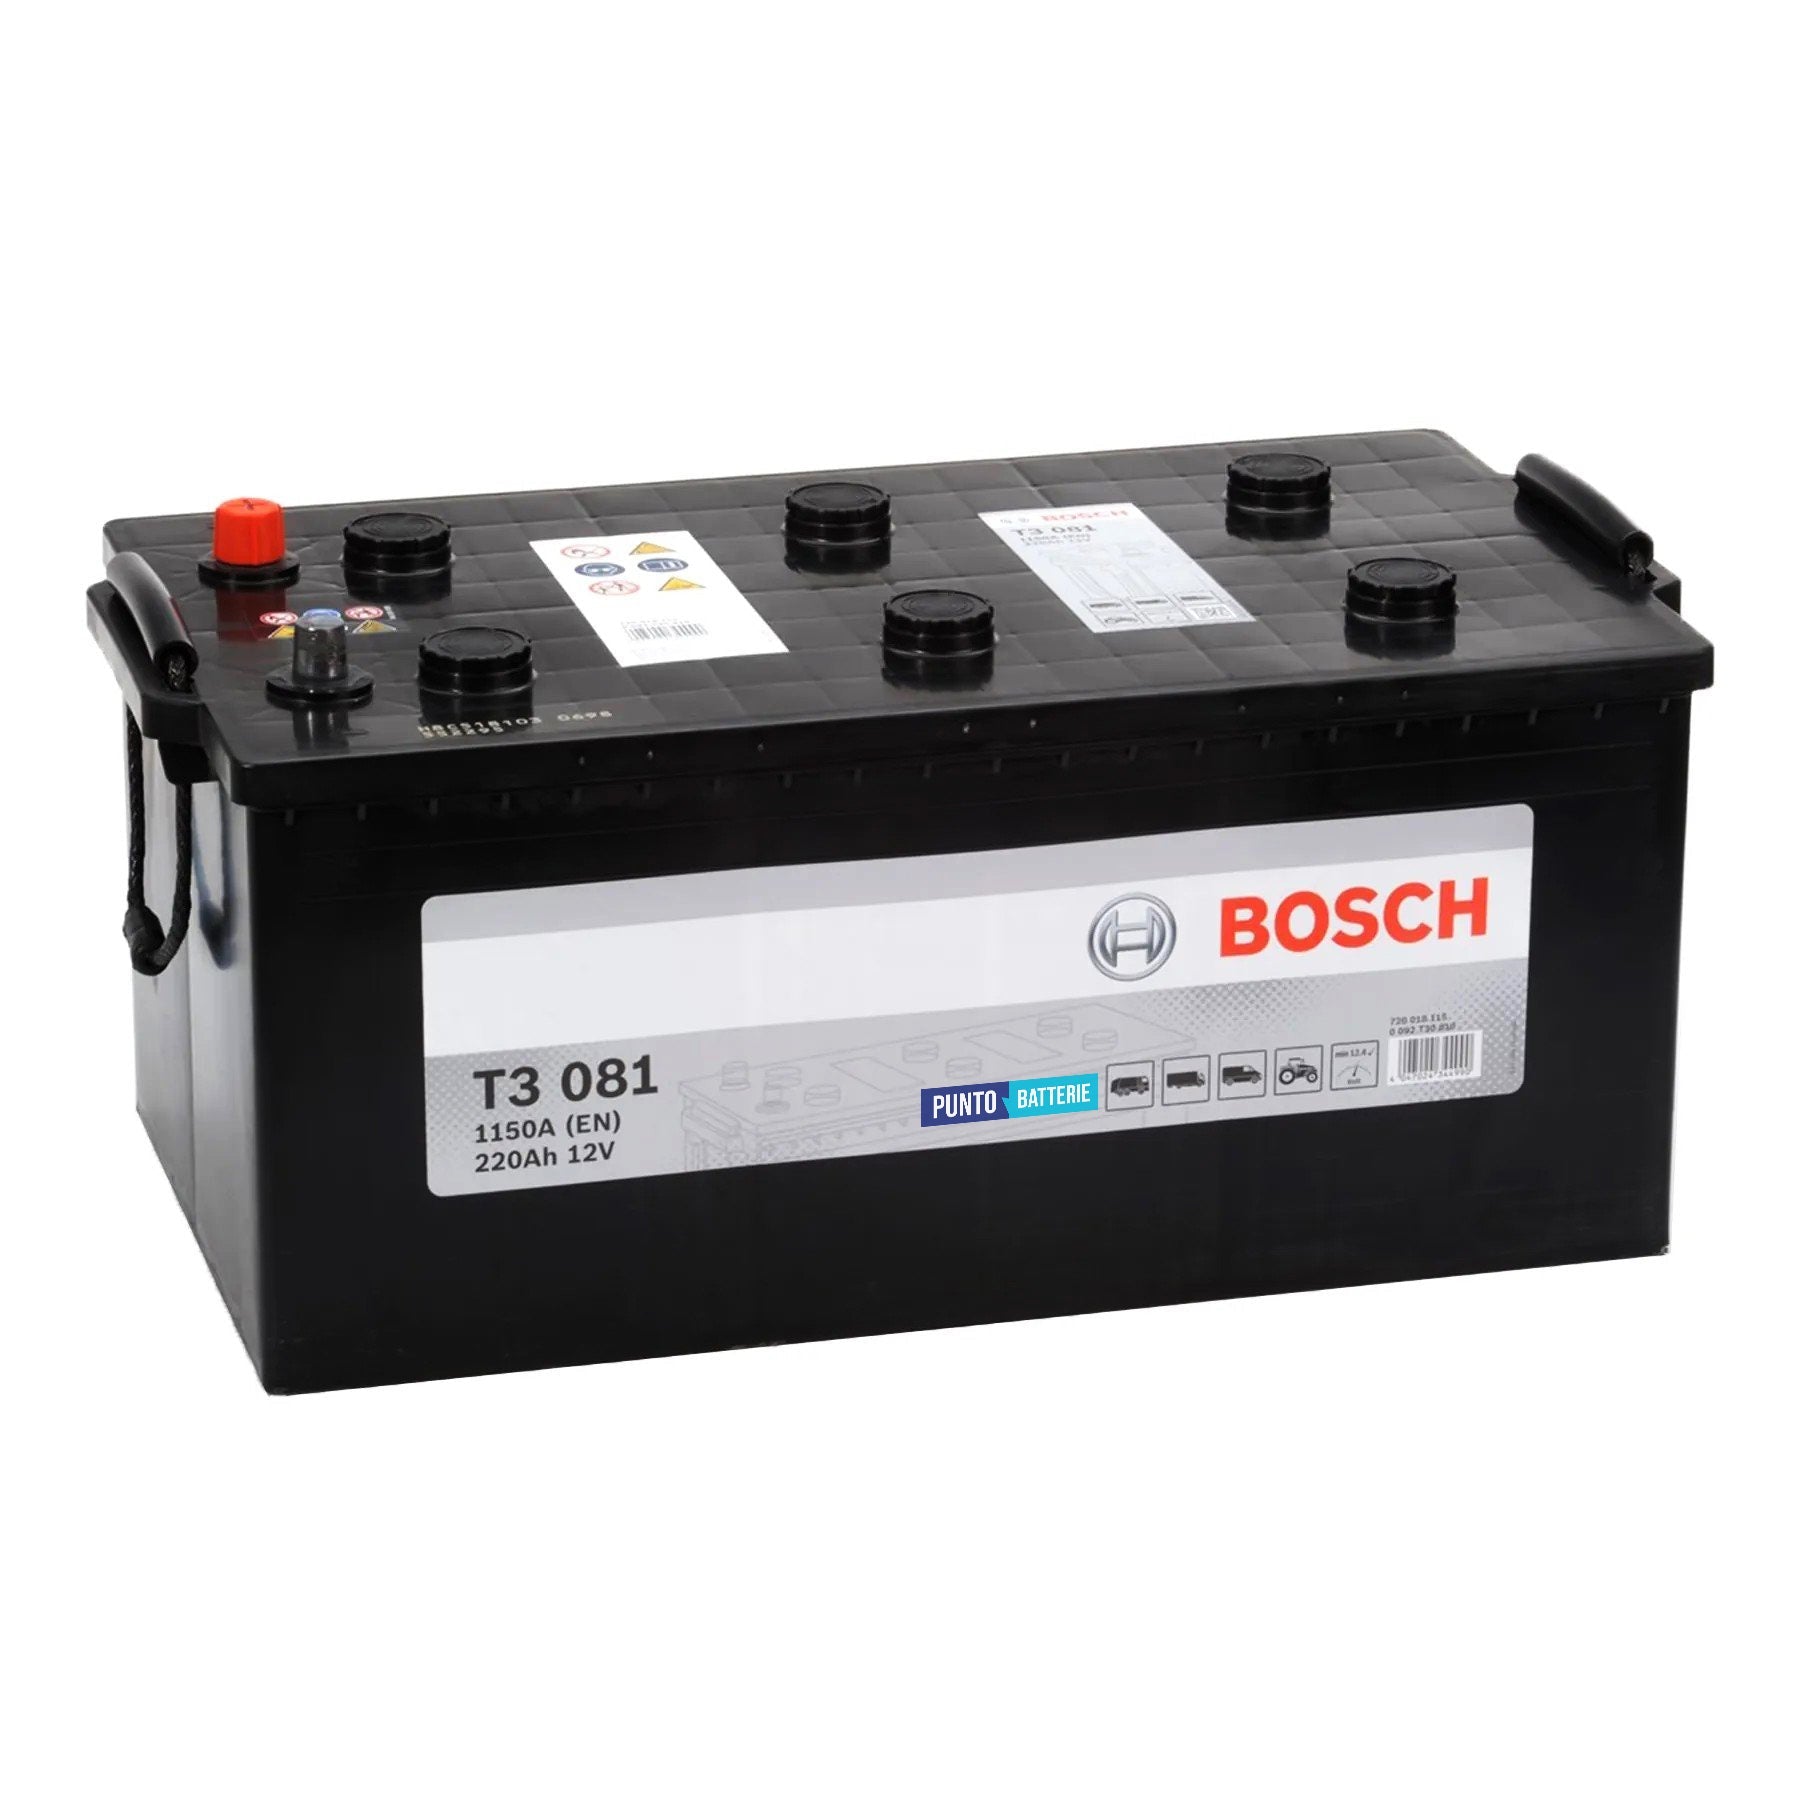 Batteria originale Bosch T3 T3081, dimensioni 518 x 291 x 242, polo positivo a sinistra, 12 volt, 220 amperora, 1150 ampere. Batteria per camion e veicoli pesanti.